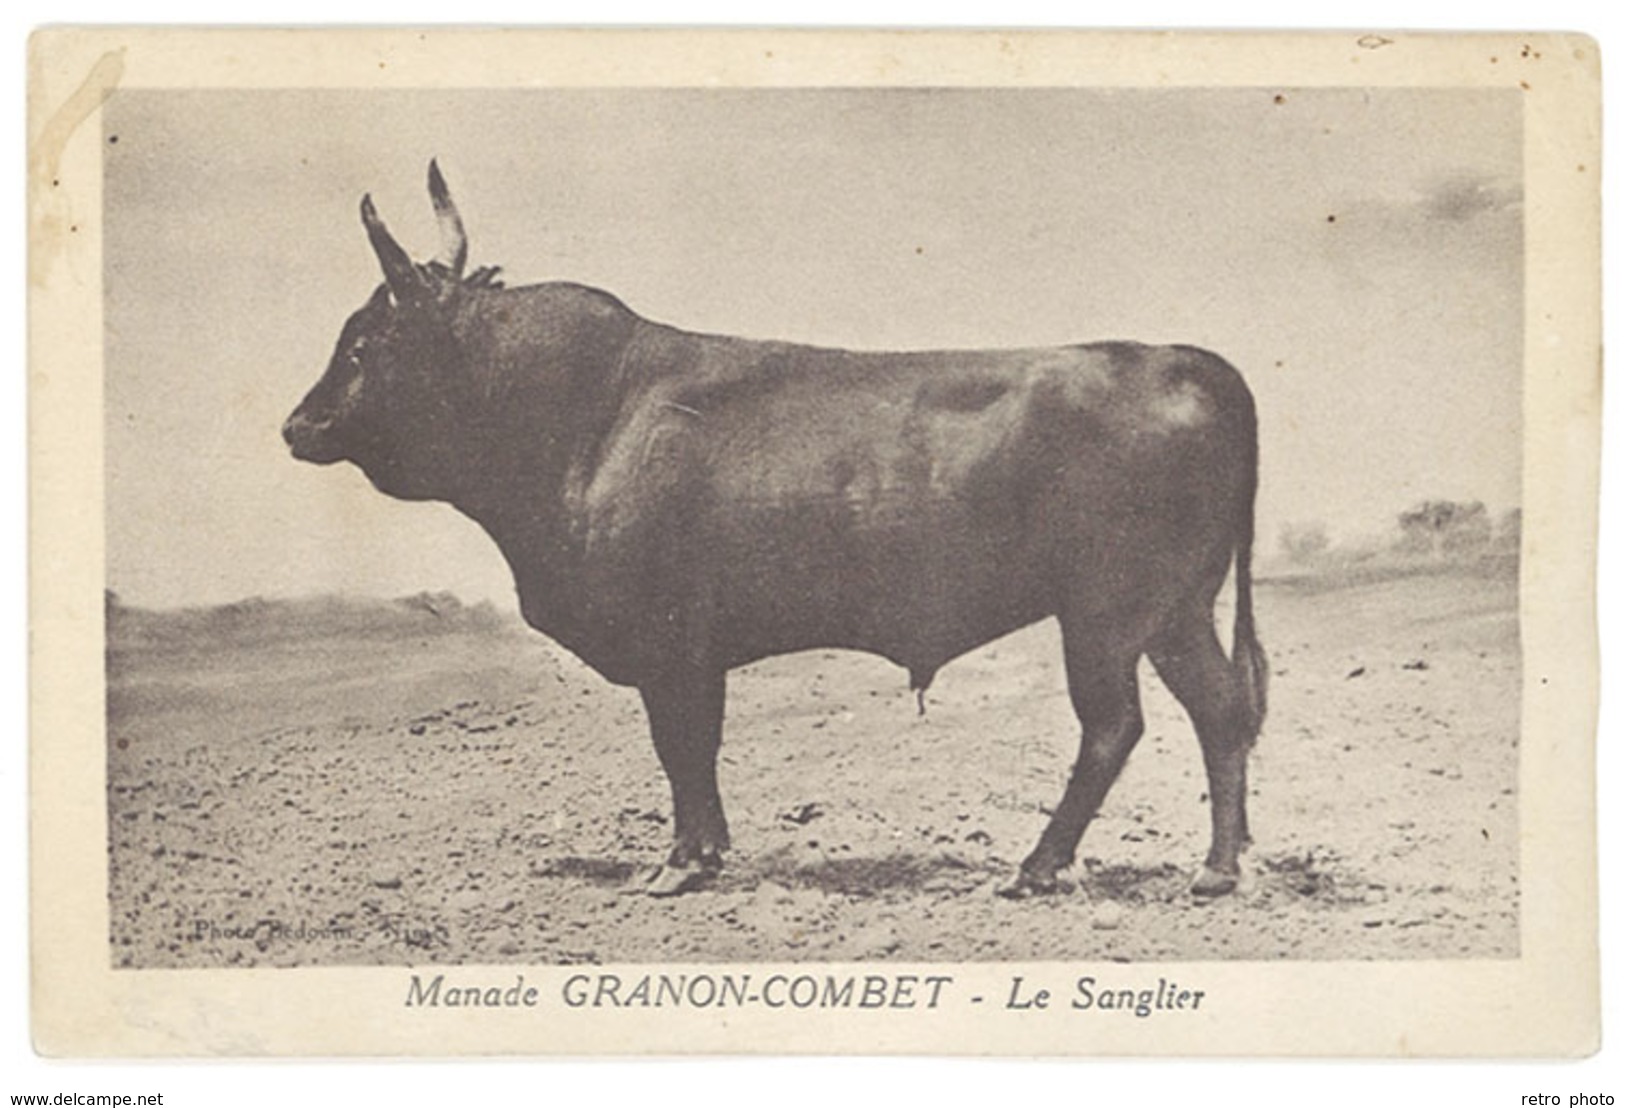 Cpa Manade Granon-Combet - Le Sanglier ( Taureau ) ( AN ) - Taureaux